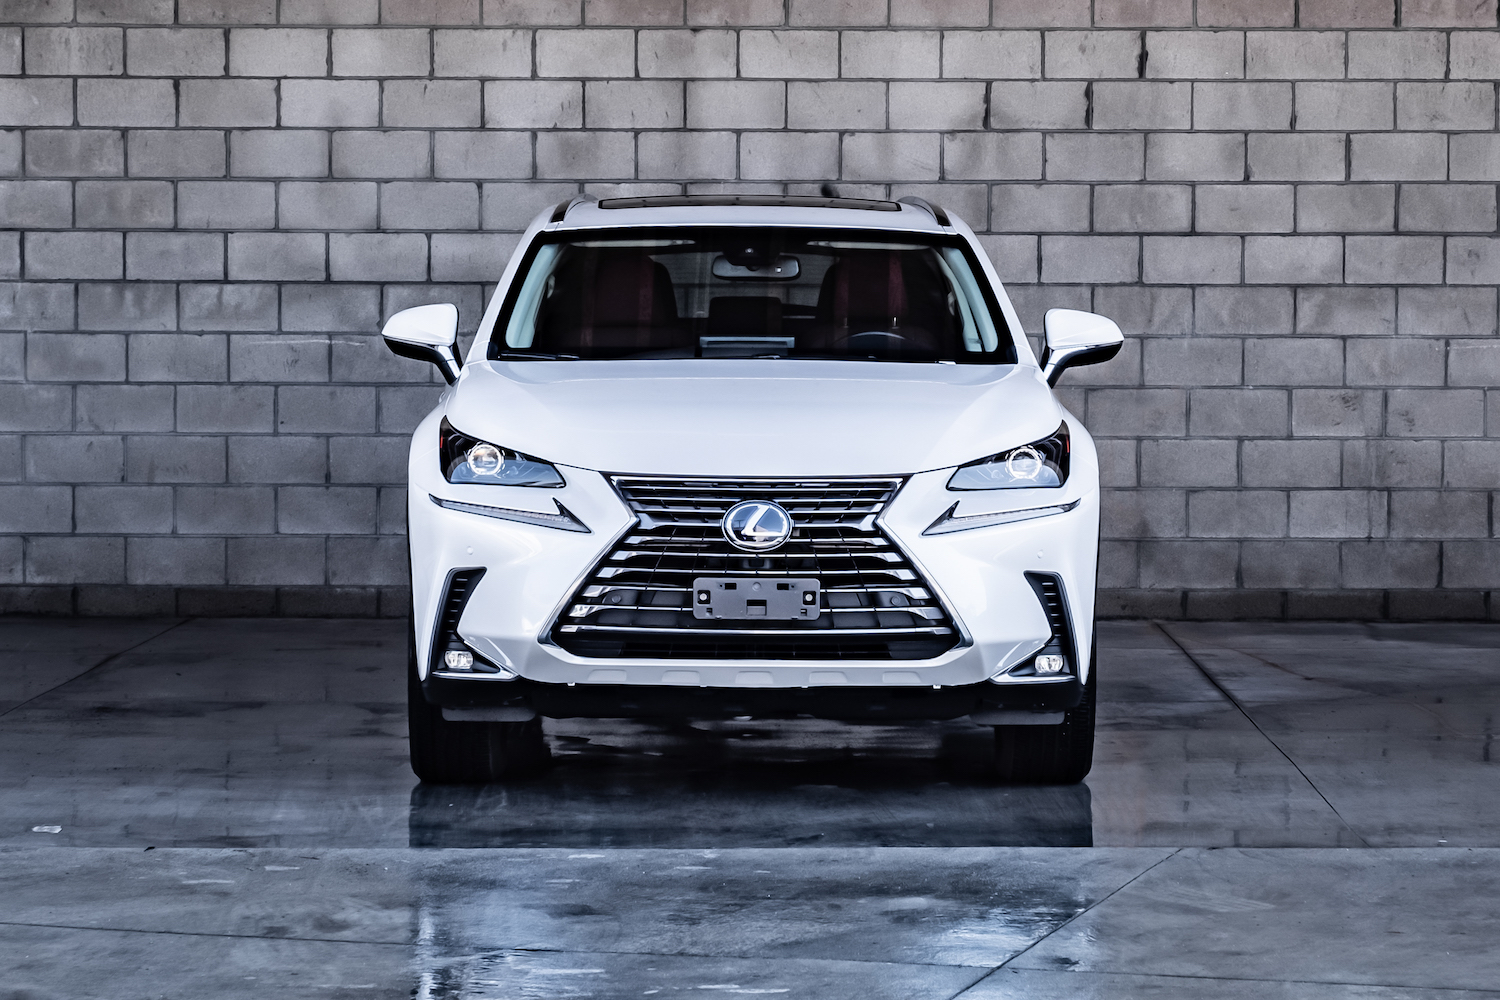 White Hybrid Lexus front